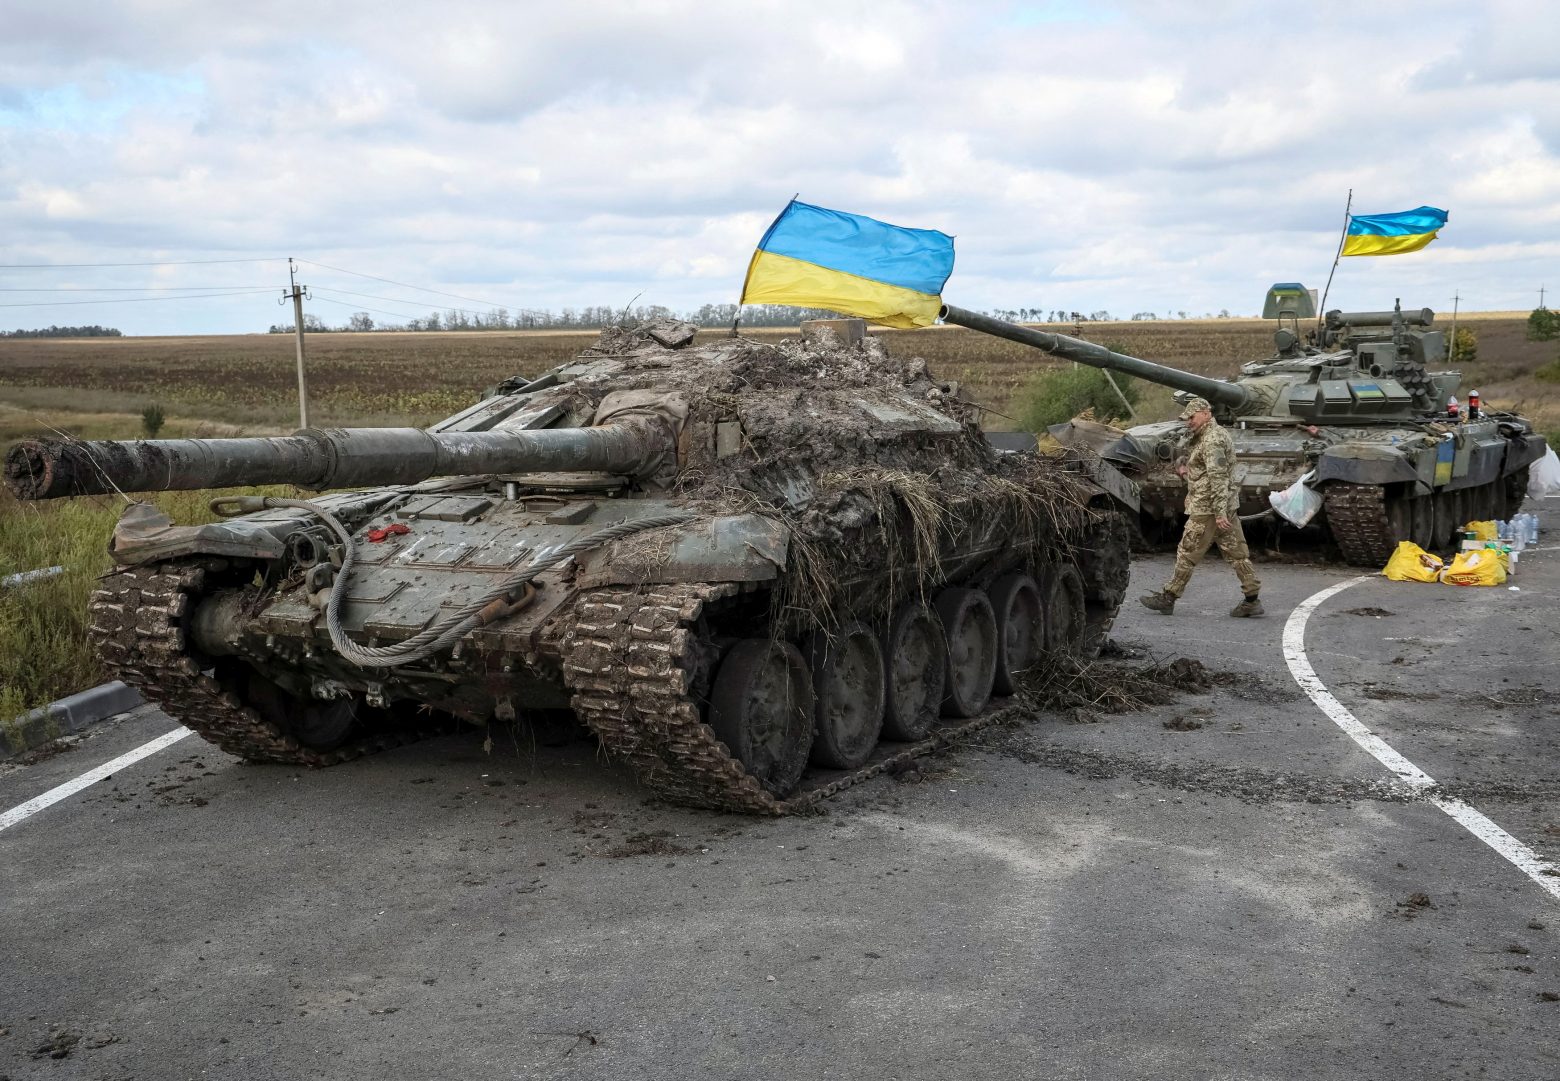 Ουκρανία: Τα όπλα που κατέλαβε από τη Ρωσία περισσότερα από όσα έστειλε η Δύση